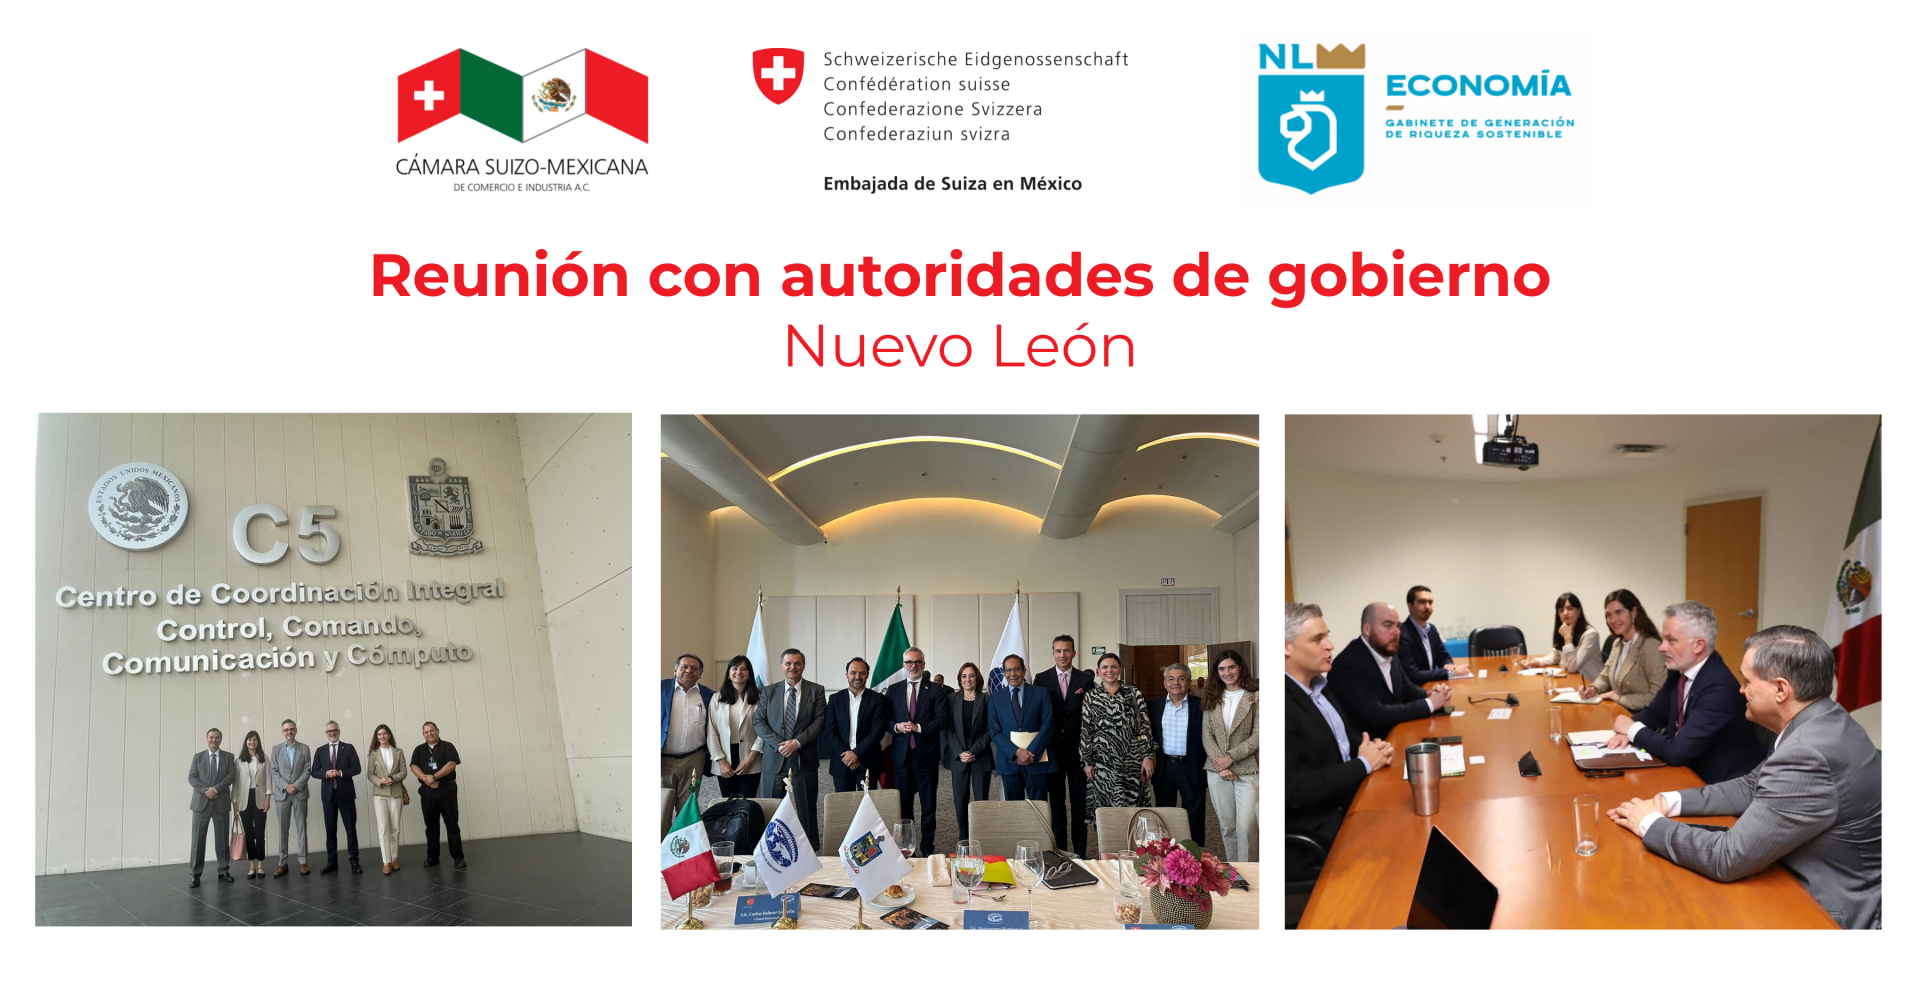 Meeting with Nuevo León authorities